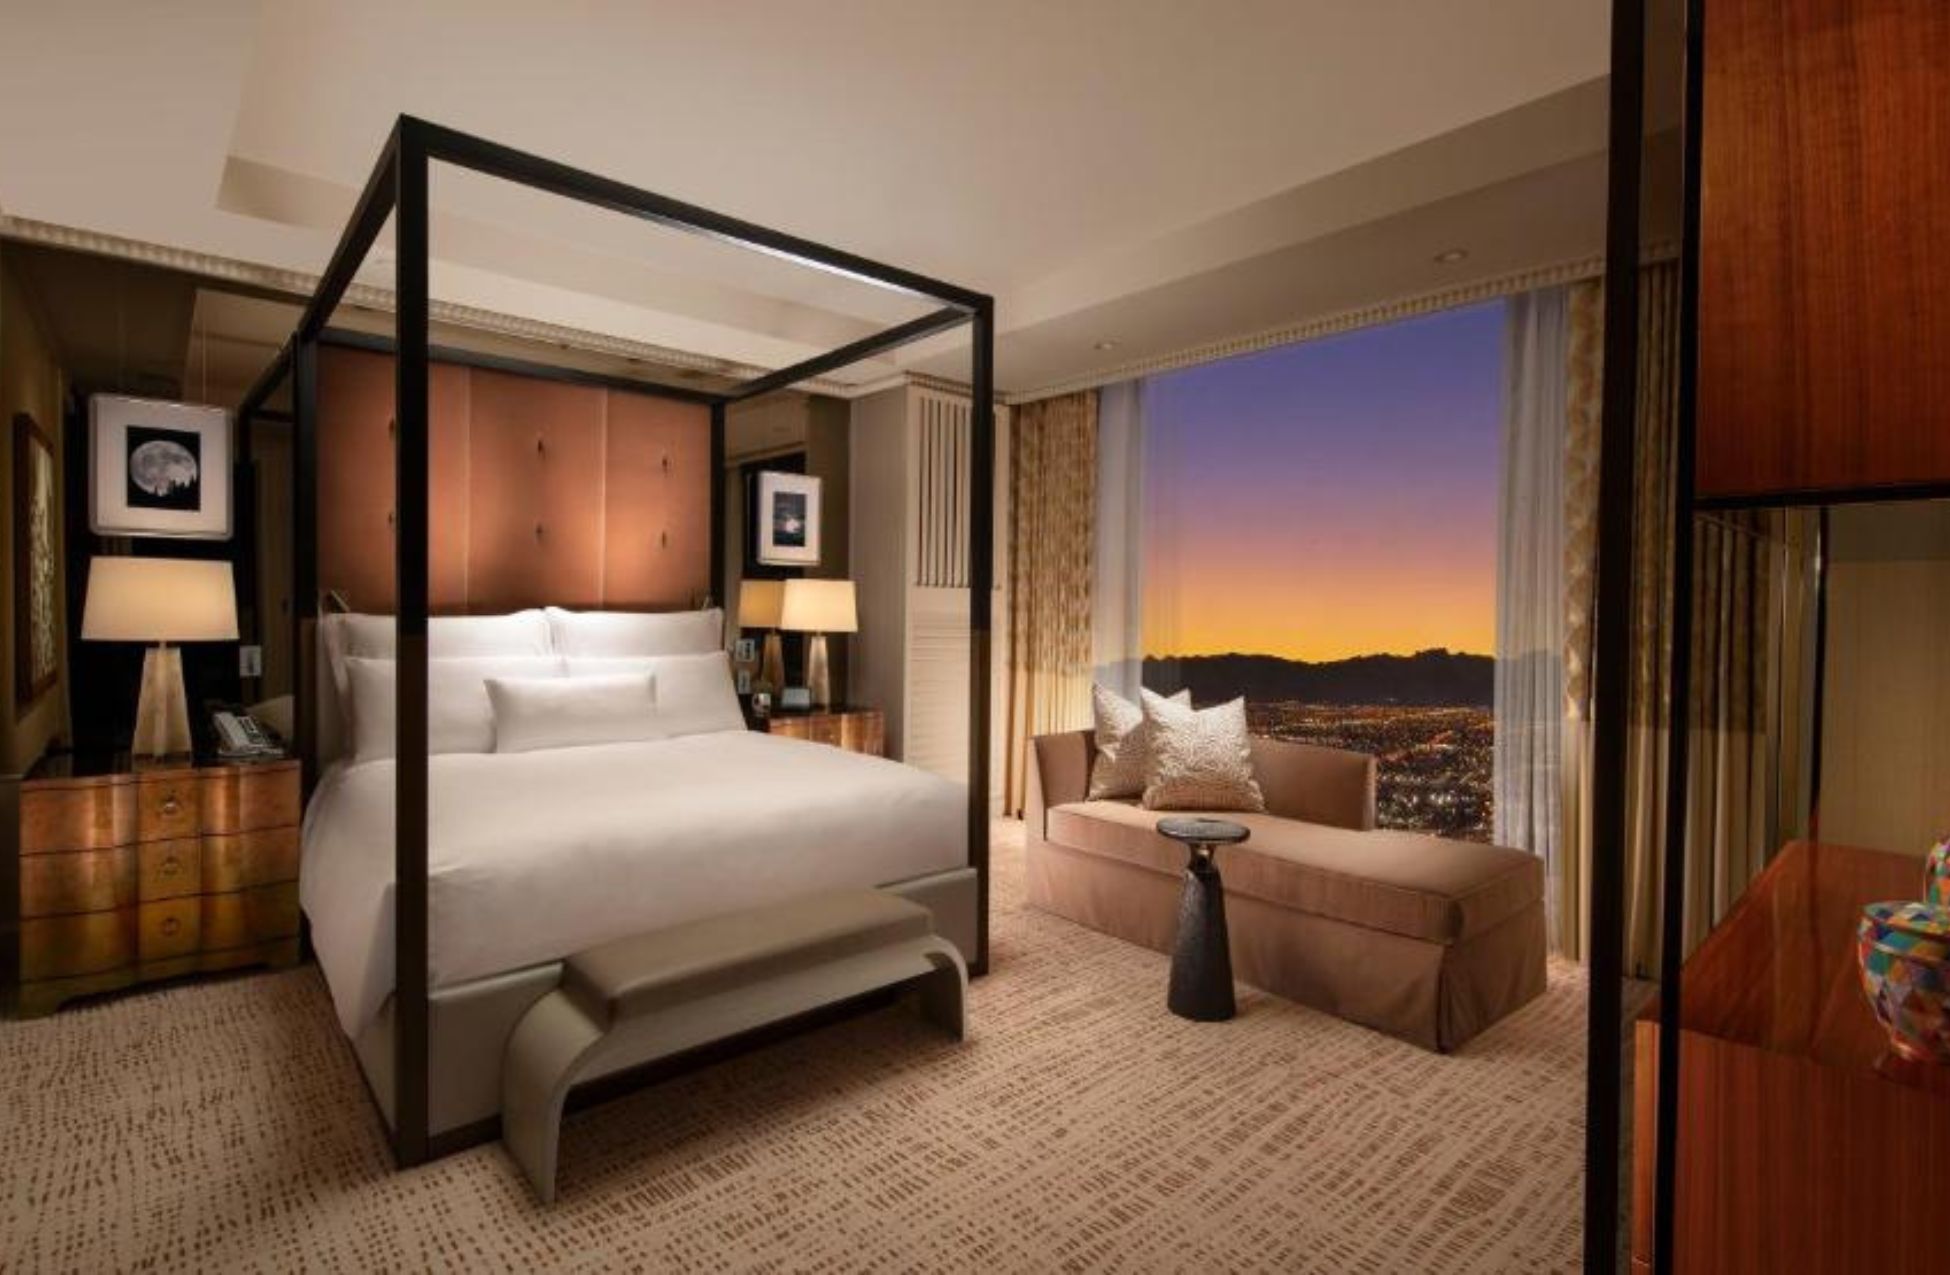 Wynn Las Vegas - Best Hotels In Las Vegas